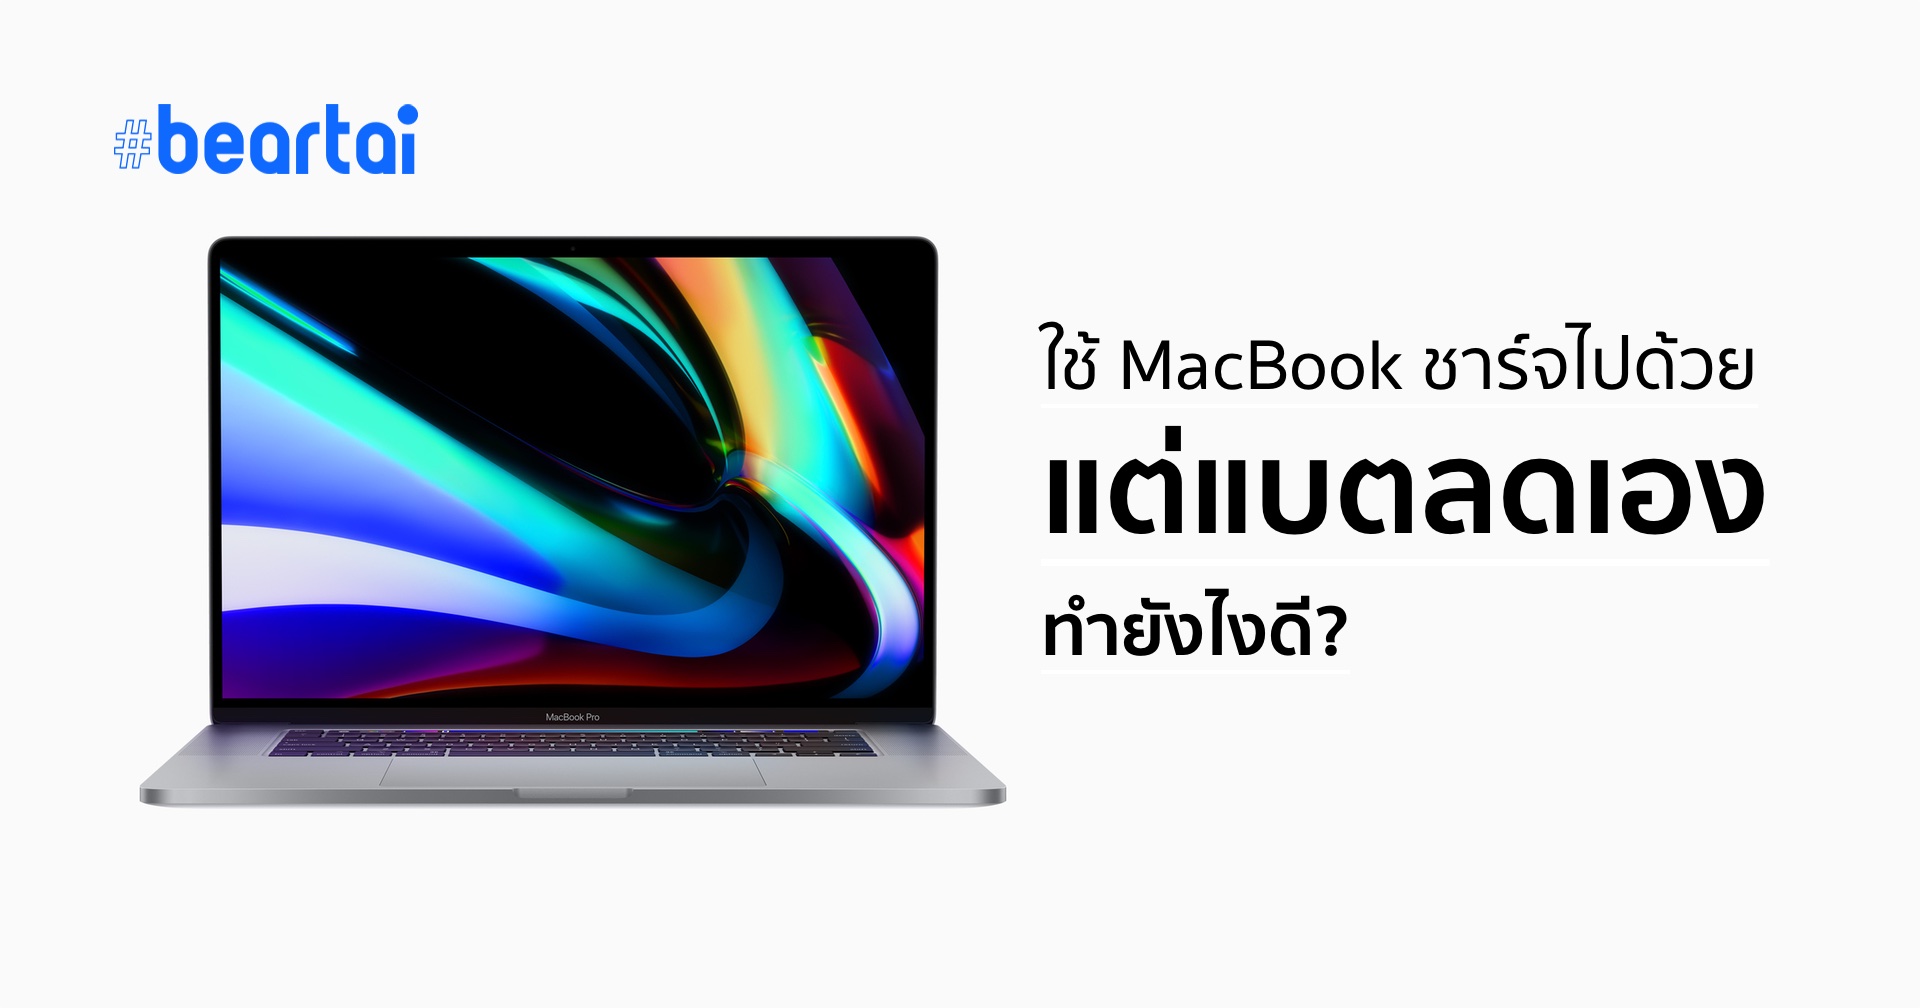 ใช้งาน MacBook ไปด้วย ชาร์จไปด้วย แต่แบตเตอรีค่อย ๆ ลดลงเอง ทำยังไงดี?